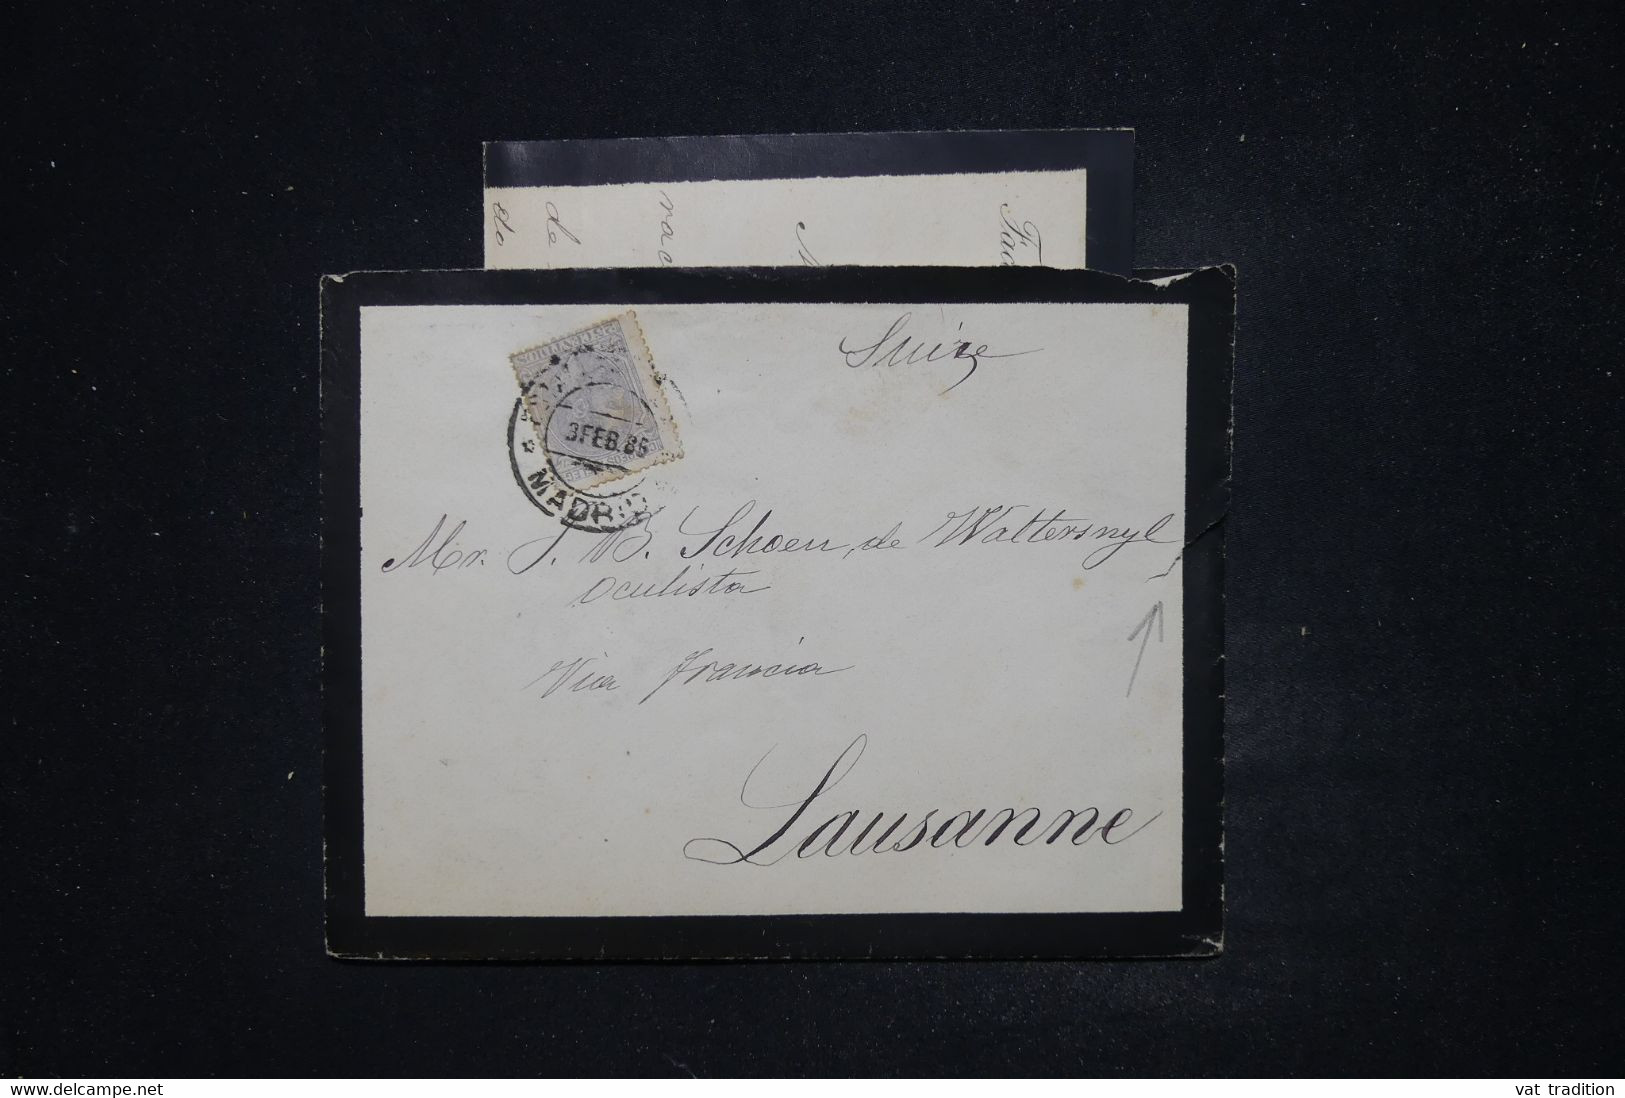 ESPAGNE - Enveloppe + Contenu De Madrid Pour La Suisse En 1886 - L 122036 - Storia Postale